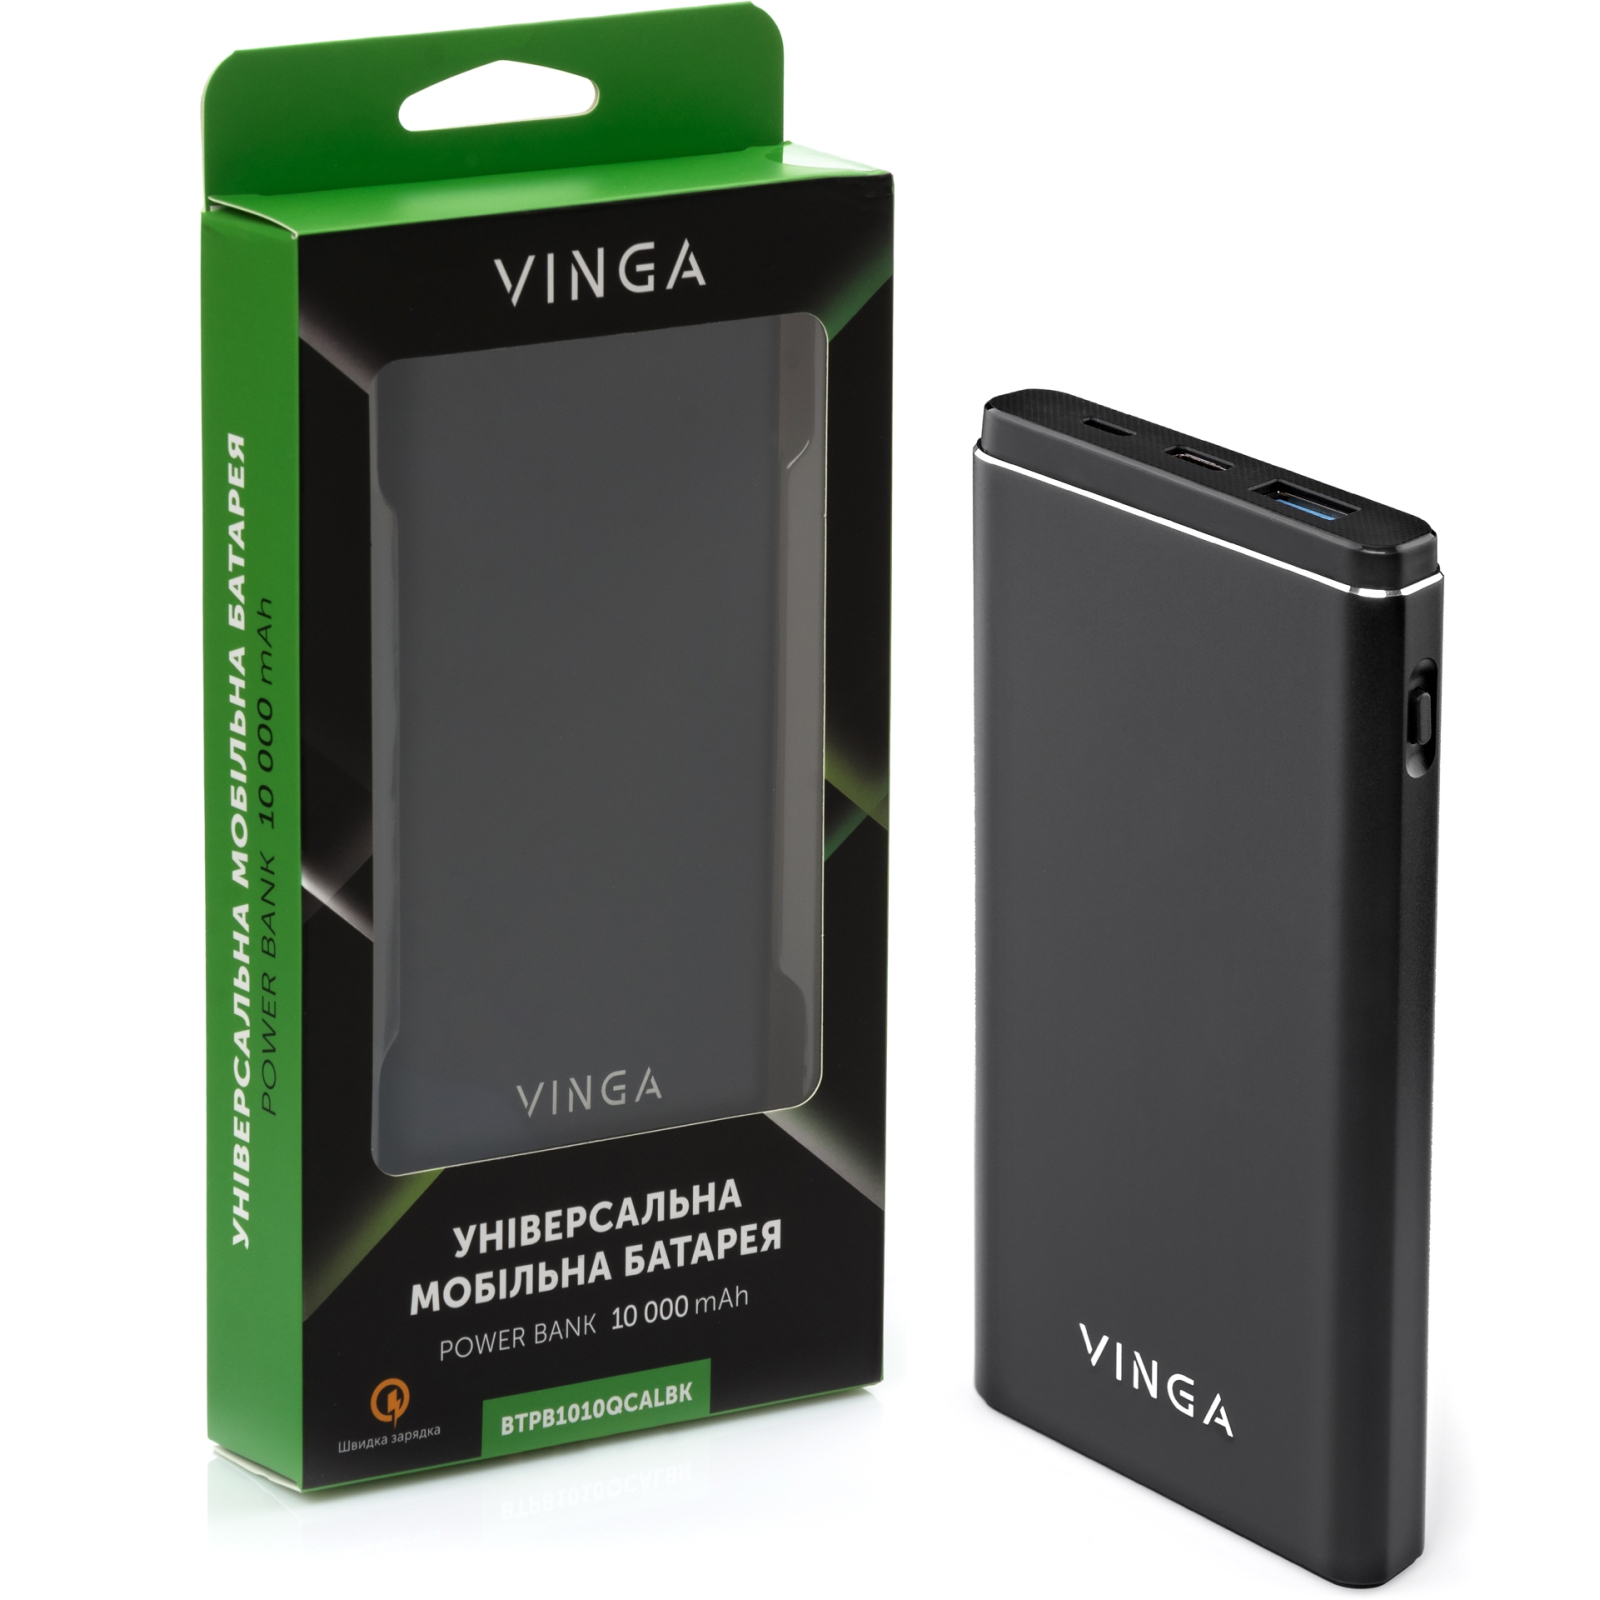 Батарея универсальная Vinga 10000 mAh QC3.0 PD aluminium black (BTPB1010QCALBK) изображение 6